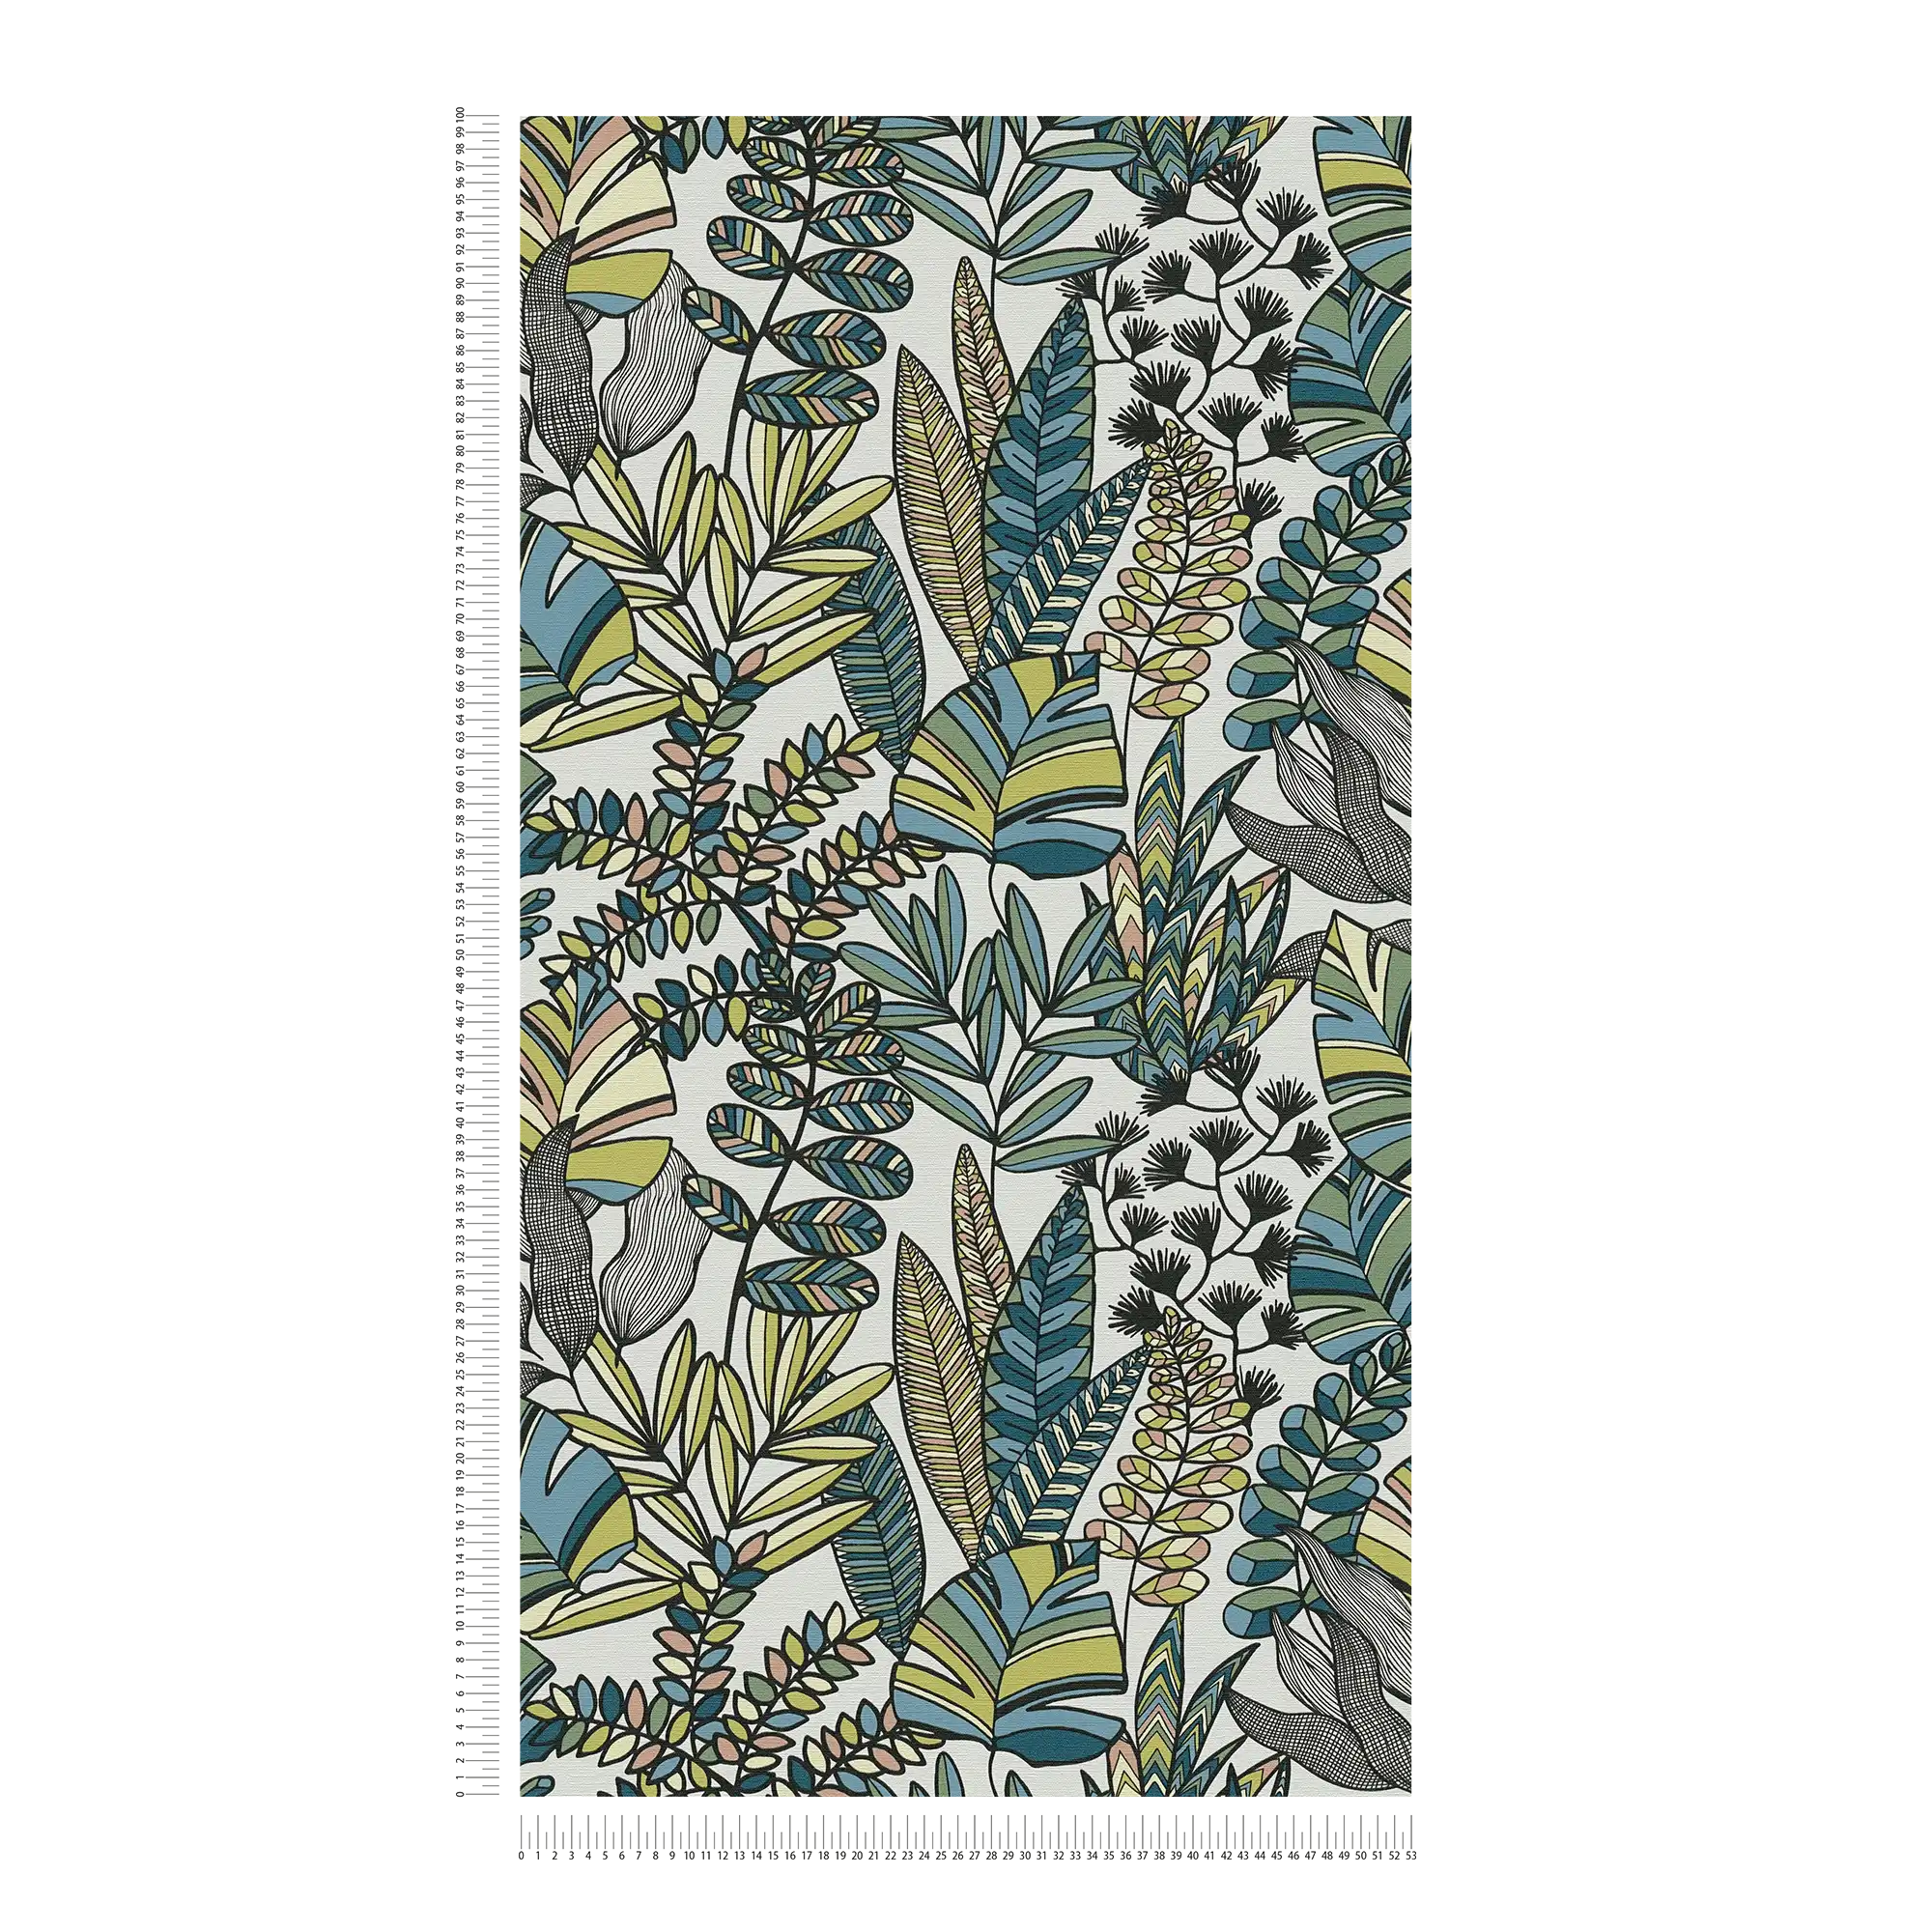             Vliestapete mit großen Blättern in kräftigen Farben – Weiß, Schwarz, Blau
        